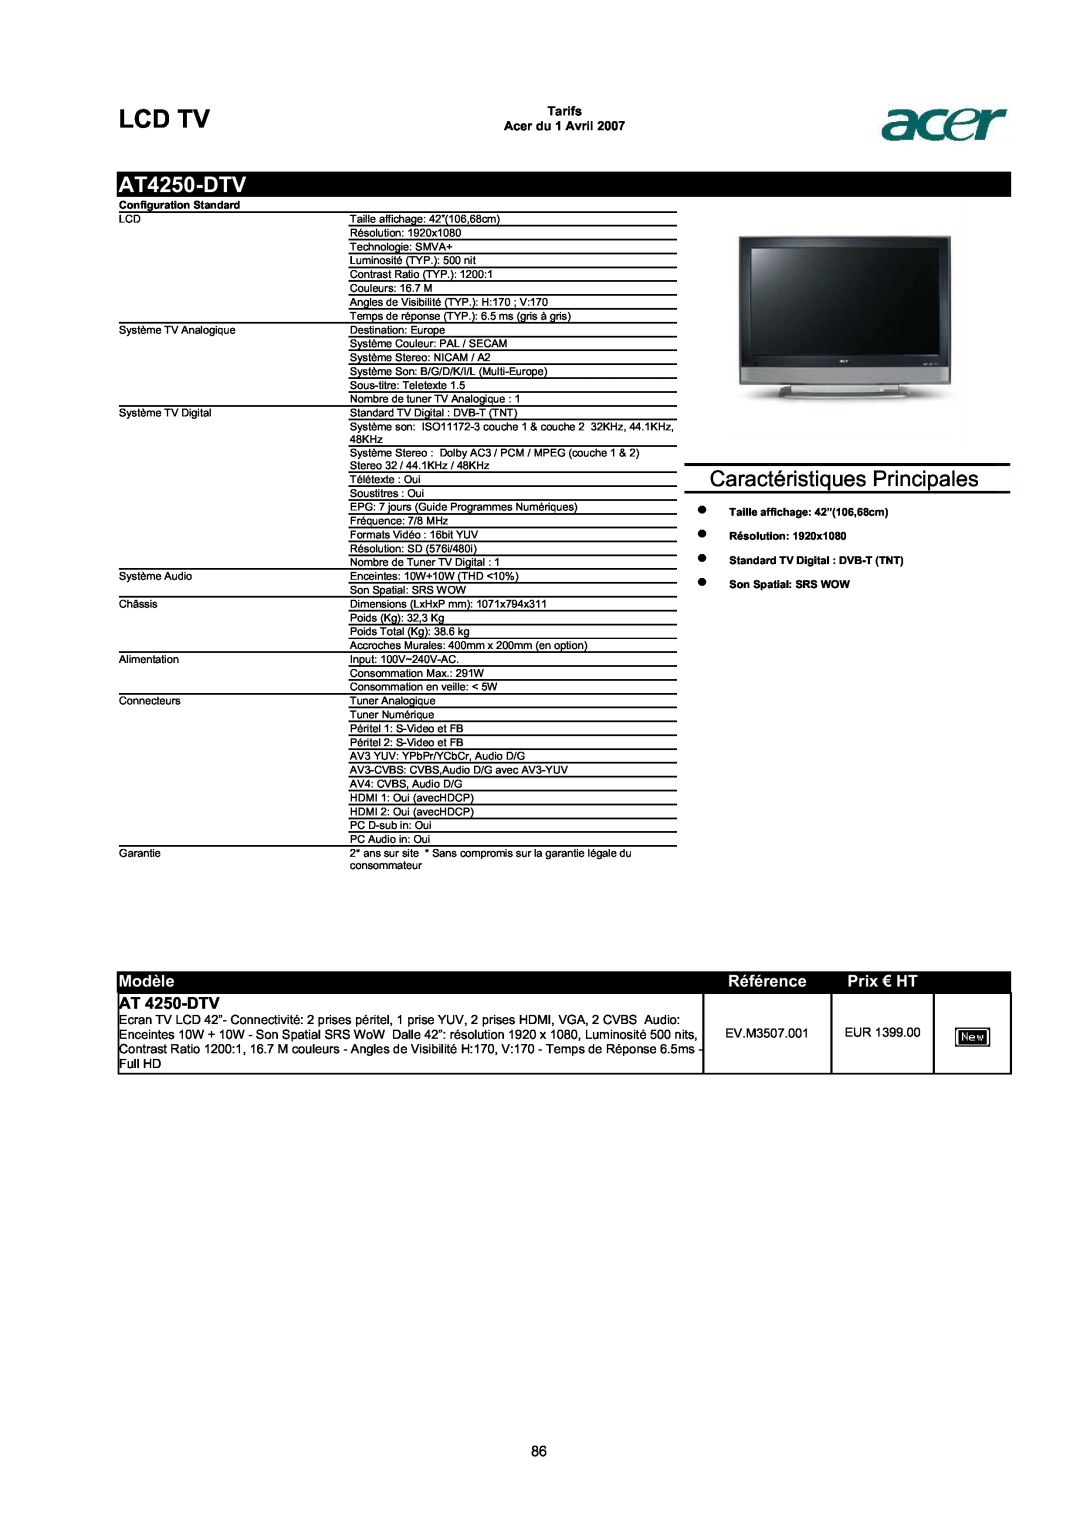 Acer AC713B-17 AT4250-DTV, AT 4250-DTV, Lcd Tv, Caractéristiques Principales, Modèle, Référence, Prix € HT, Résolution 